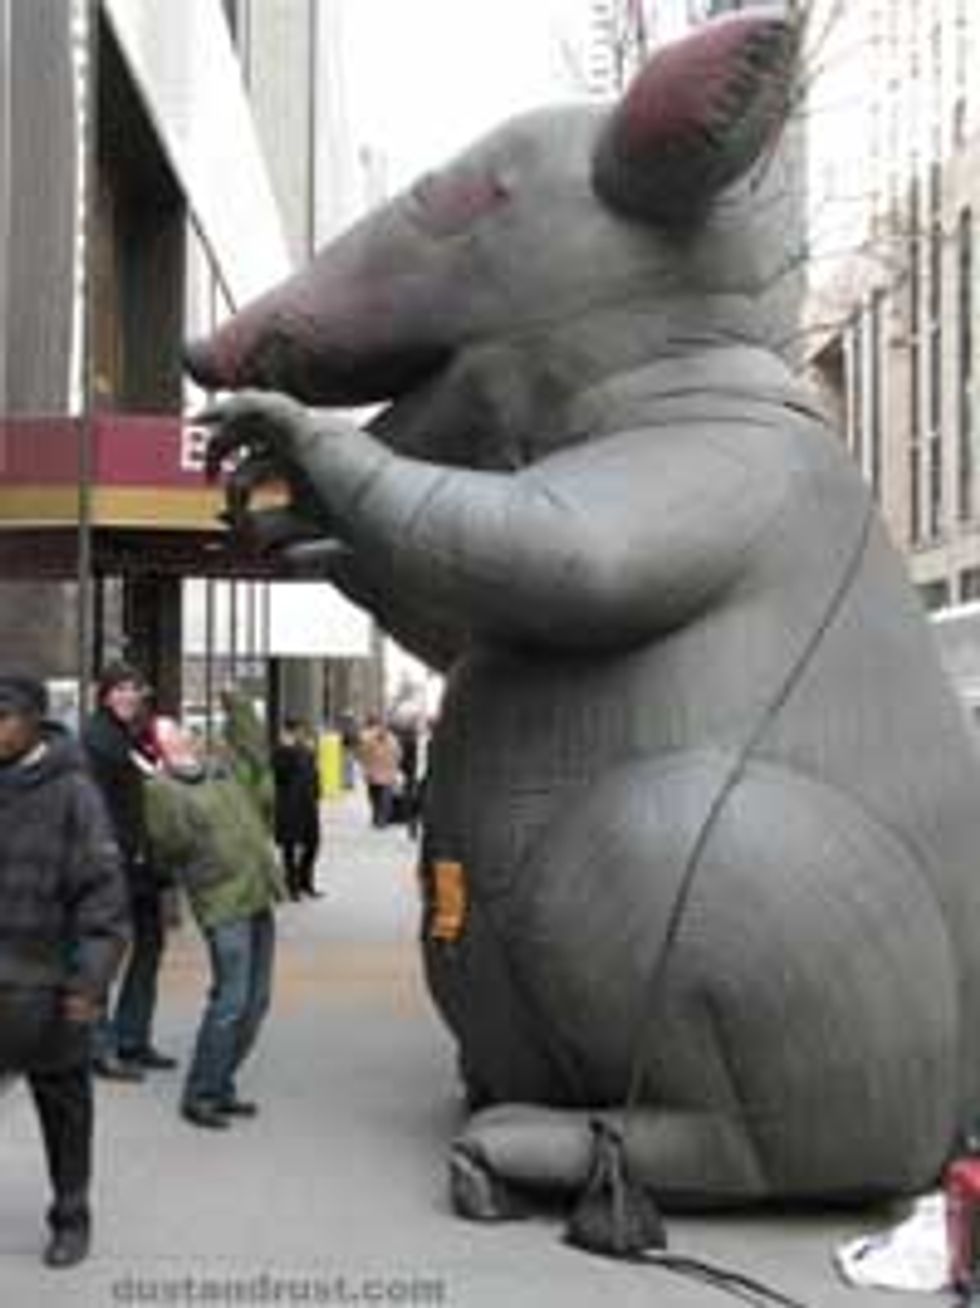 Joe Lieberman Threatened With Scary Rat Balloon